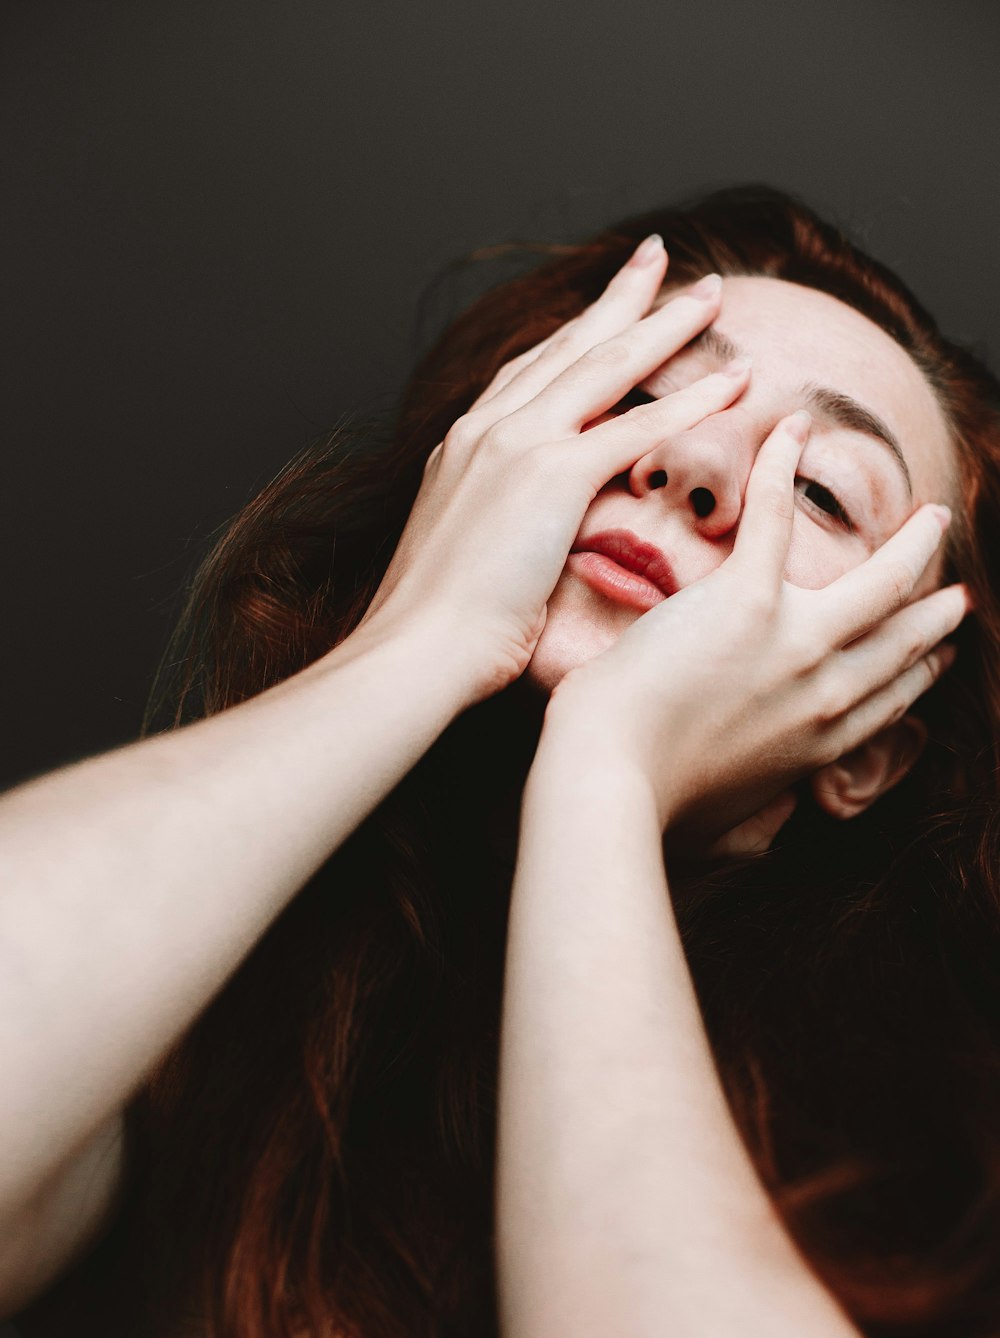 Foto mujer tapándose la cara con la mano – Imagen Cara gratis en Unsplash